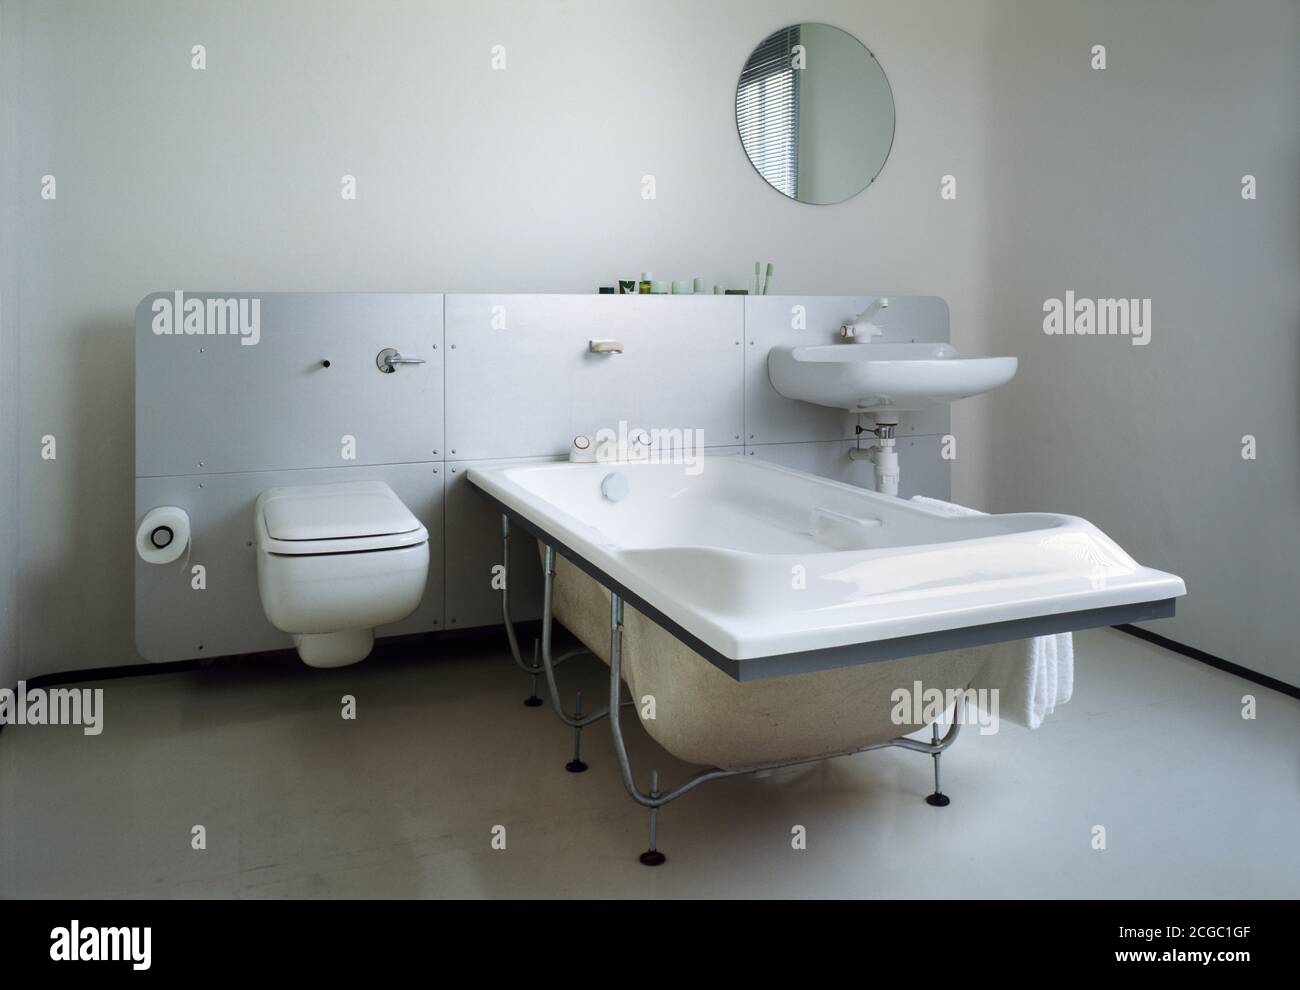 Innenansicht von Project 118 DS Flat, London, UK. Badezimmer mit Badewanne, Waschbecken und WC. Stockfoto